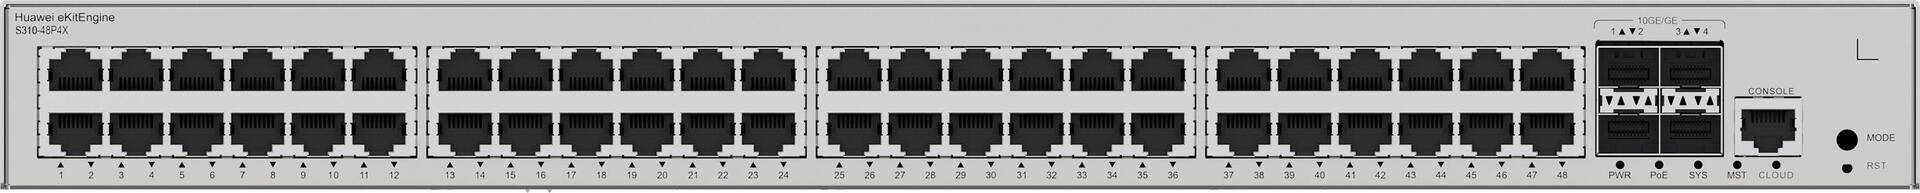 Huawei eKit Switch S310-48P4X - Diese Serie von Ethernet-Switches - basierend auf hochleistungsf�higer Hardware der neuen Generation - kann in SOHO-Szenarien sowie f�r den Netzwerkzugang und die Aggregation in Unternehmenscampusnetzen eingesetzt werden. > Produkttyp- Switch- ear-Kategorie (ElektroG): relevant - Kategorie 6: kleine Ger�te der IT- und TK-Technik - Kleine Ger�te der IT- und TK-Technik B2C> Spezifikationen- L�fter integriert- Switch-Art: Access> Anschl�sse- Bandbreite: 10/100/1000 MBit/s- Konsolenport- Hauptporttyp: Kupfer> Funktionen- Switch managebar: Ja- Montageart: 19" Rackmontage - Desktop- IGMP> Stromversorgung- Netzteil: integriert> Grundeigenschaften- Farbe: Grau- H�he: 43.6 mm- L�nge/Tiefe: 220 mm- Breite: 442 mm (98012385) von Huawei